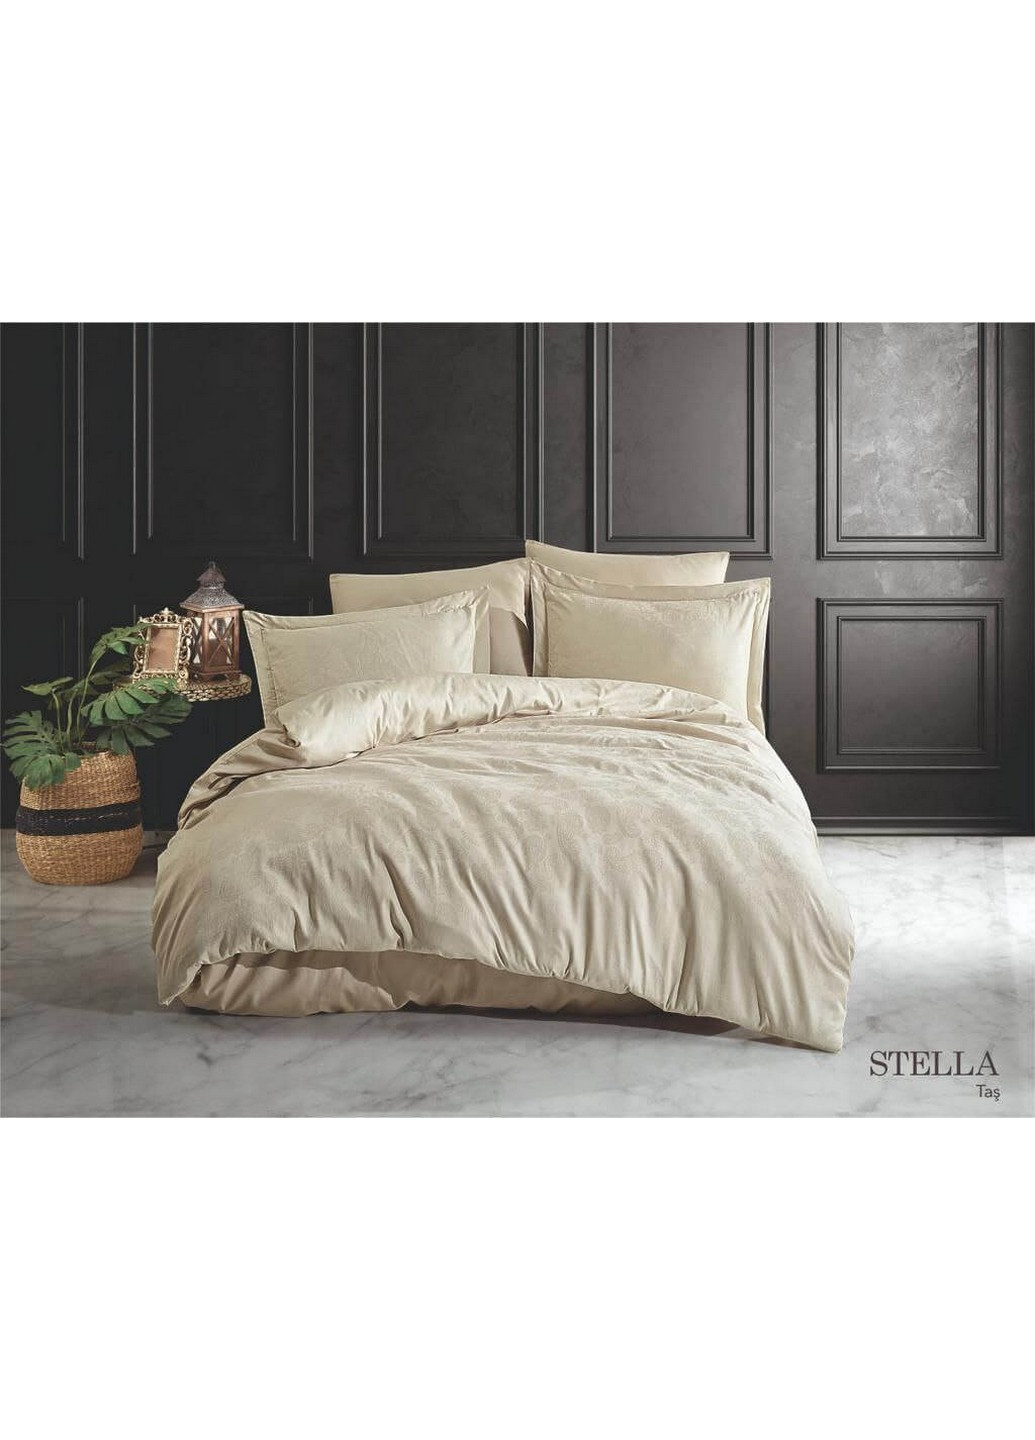 Комплект постельного белья Stella Tas Евро Fiesta (259244395)